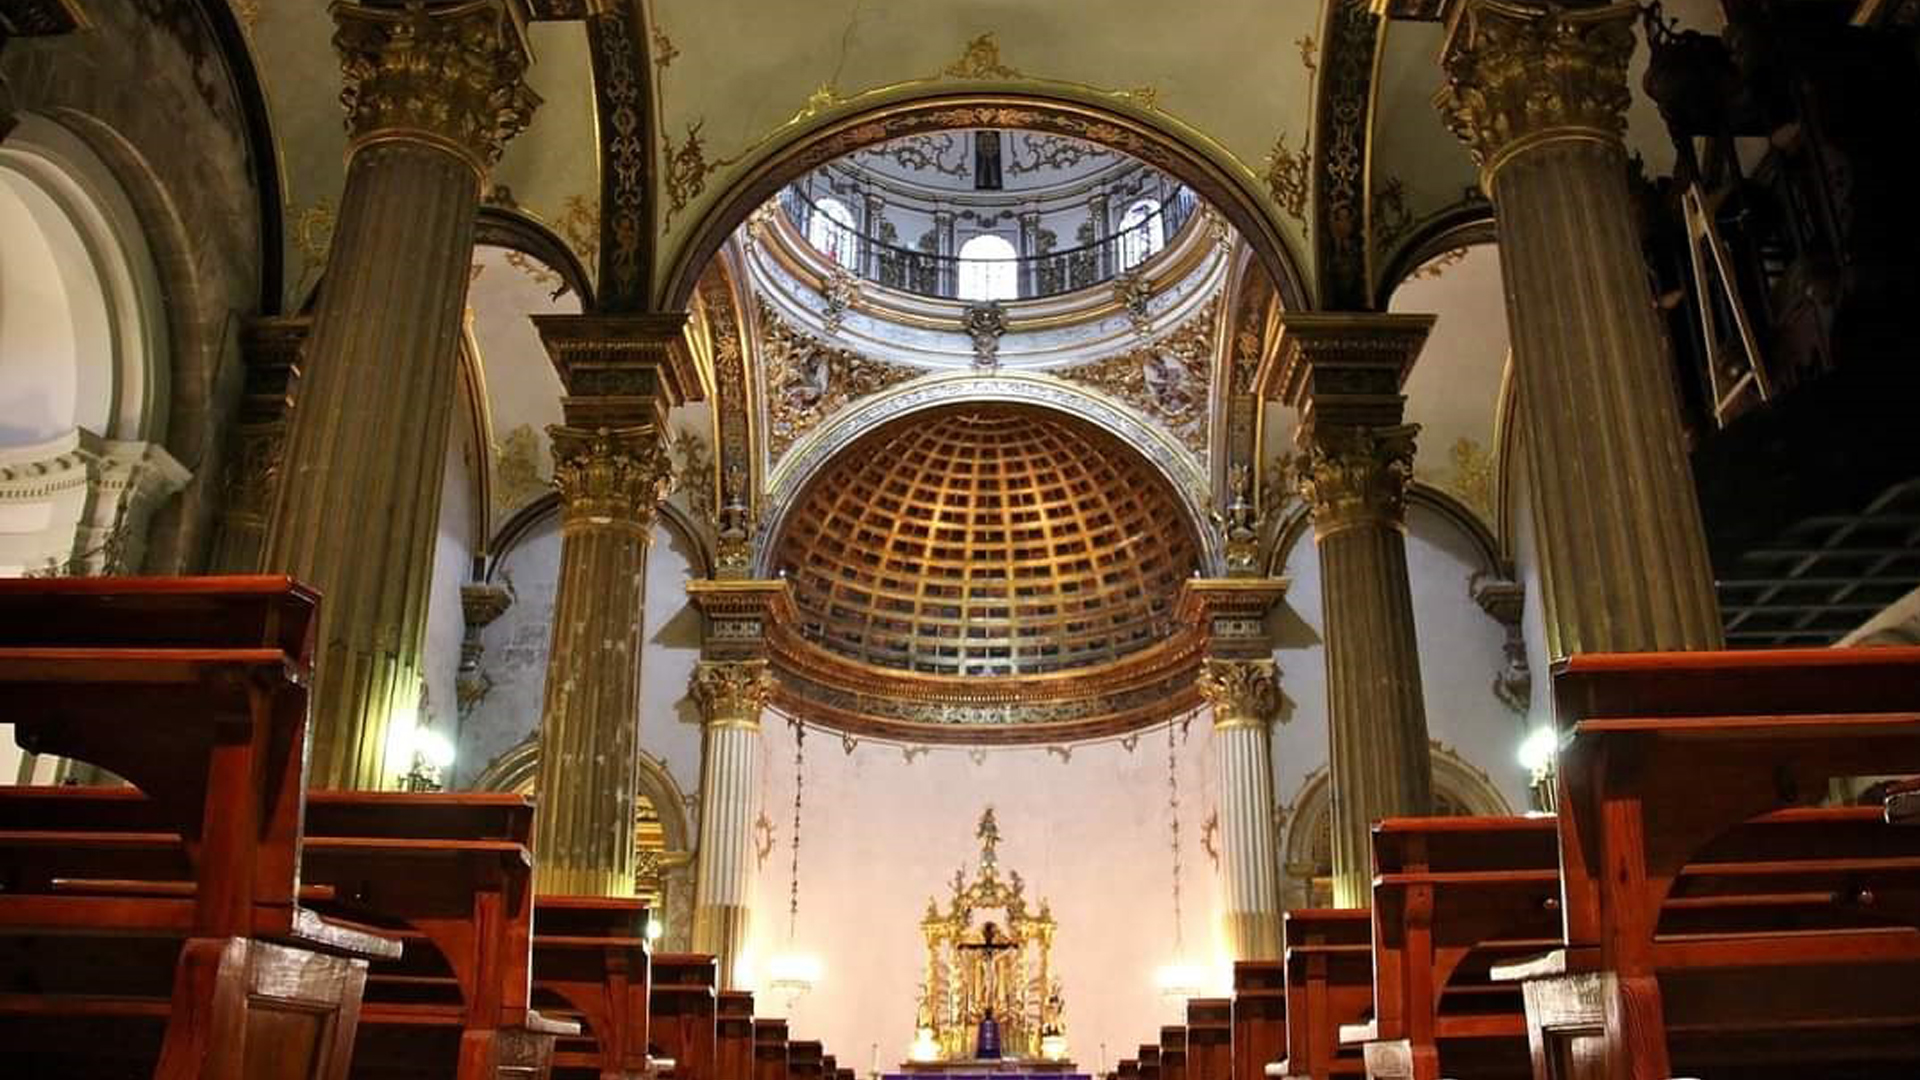 Archpriest Church of San Martín